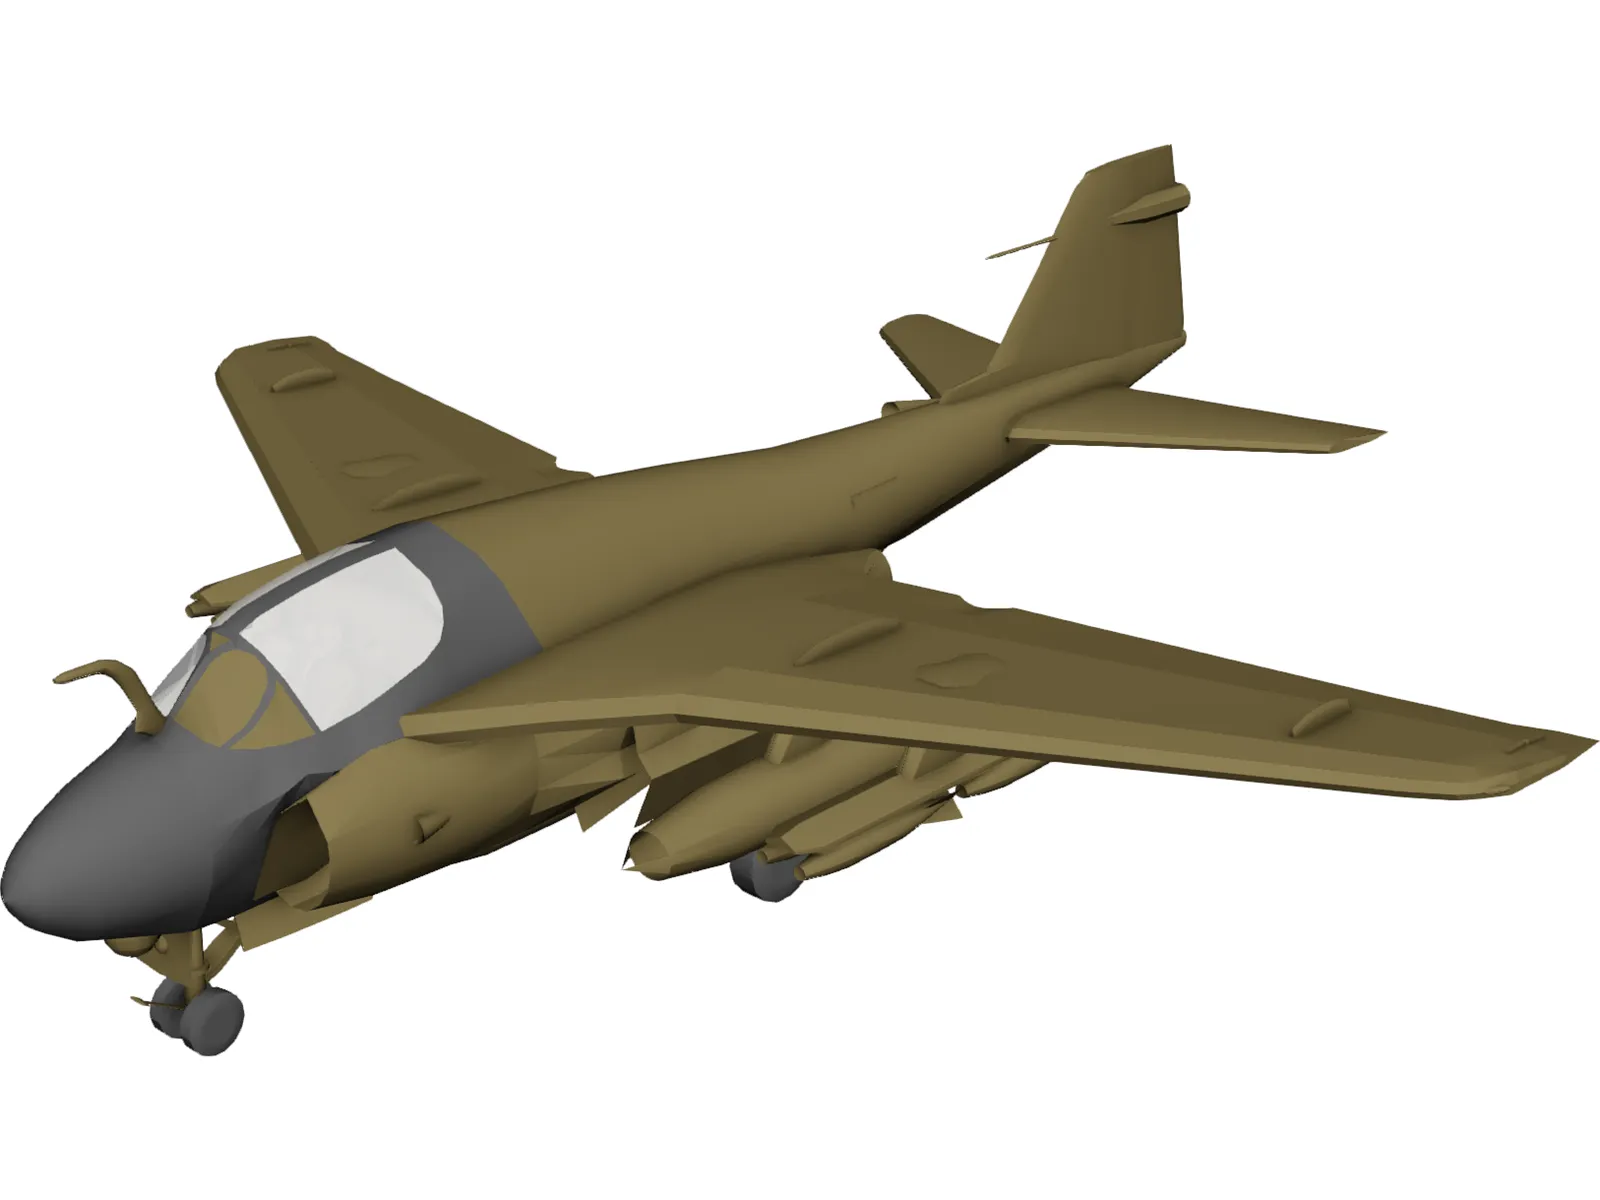 Grumman A-6E Intruder 3D Model